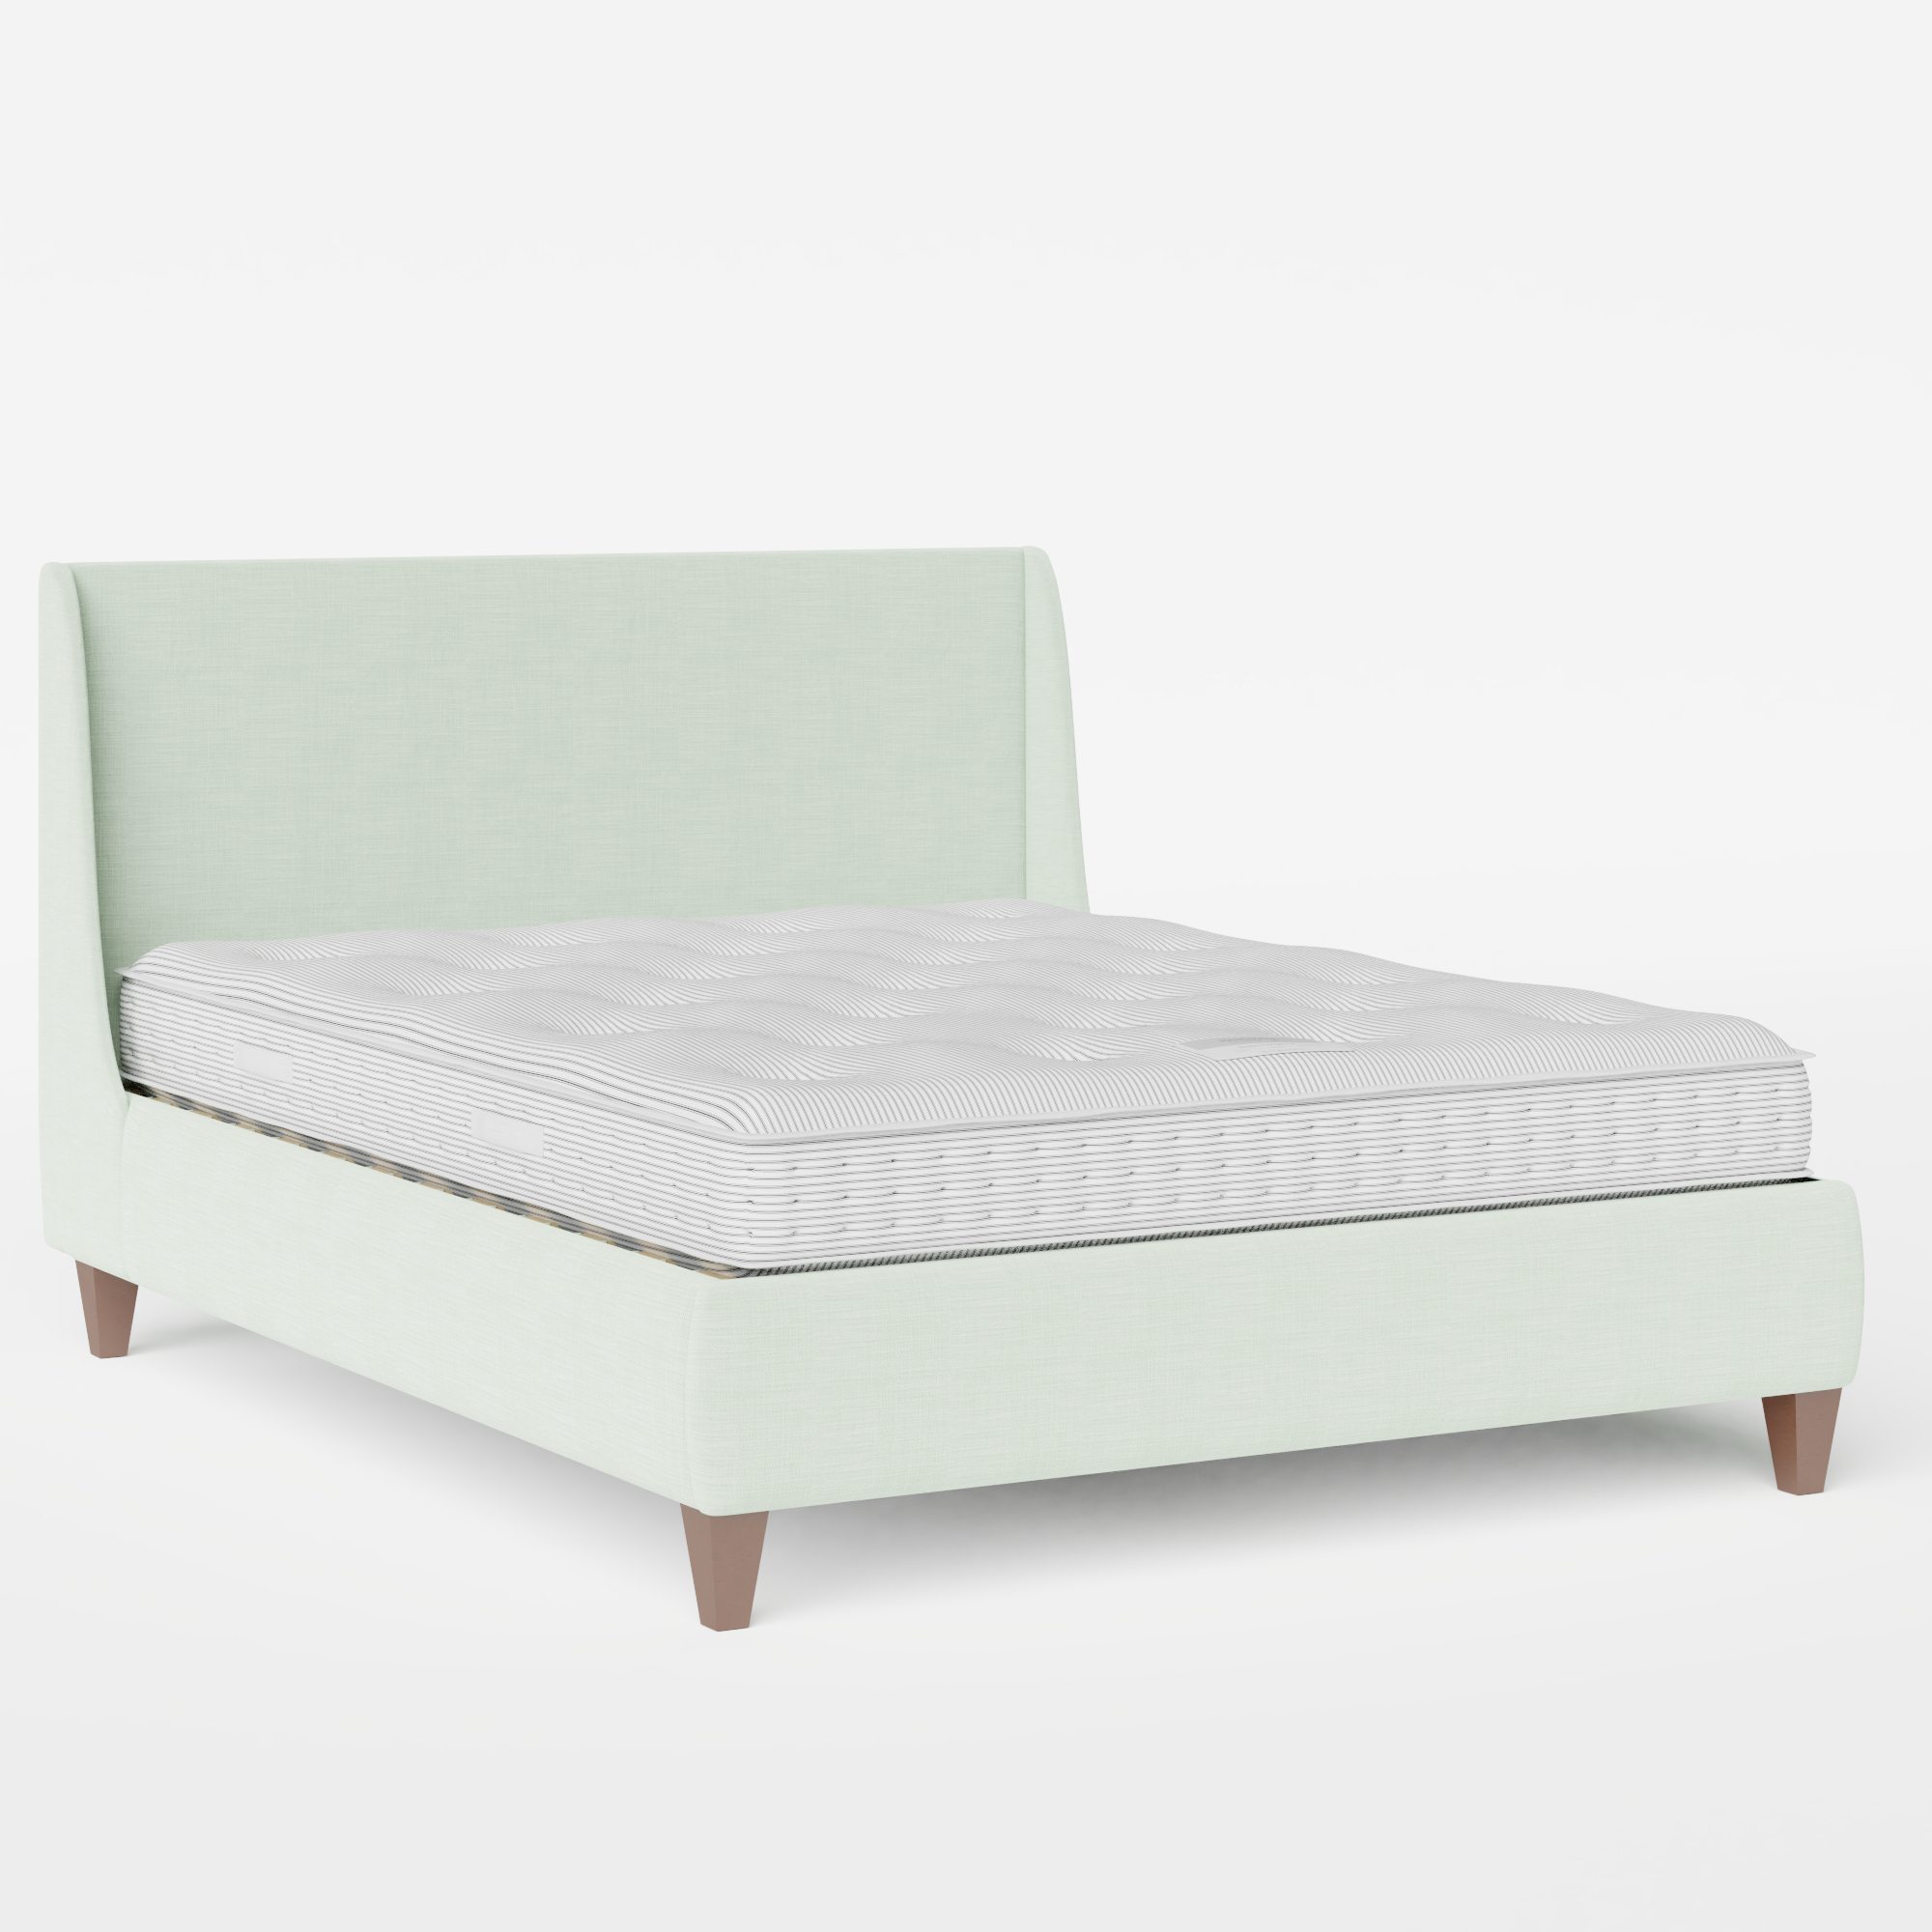 Sunderland upholstered bed in duckegg fabric